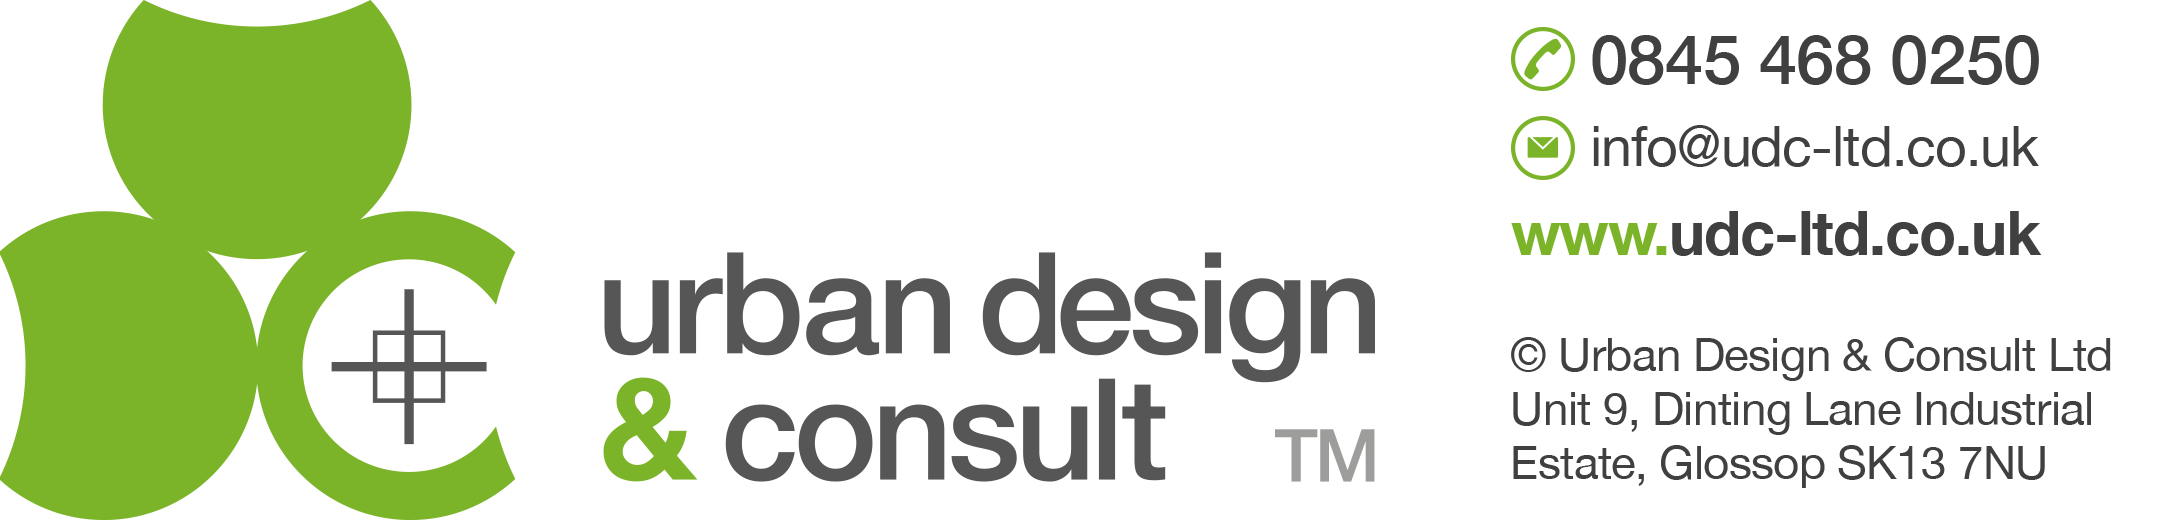 logo for Urban Design & Consult Ltd